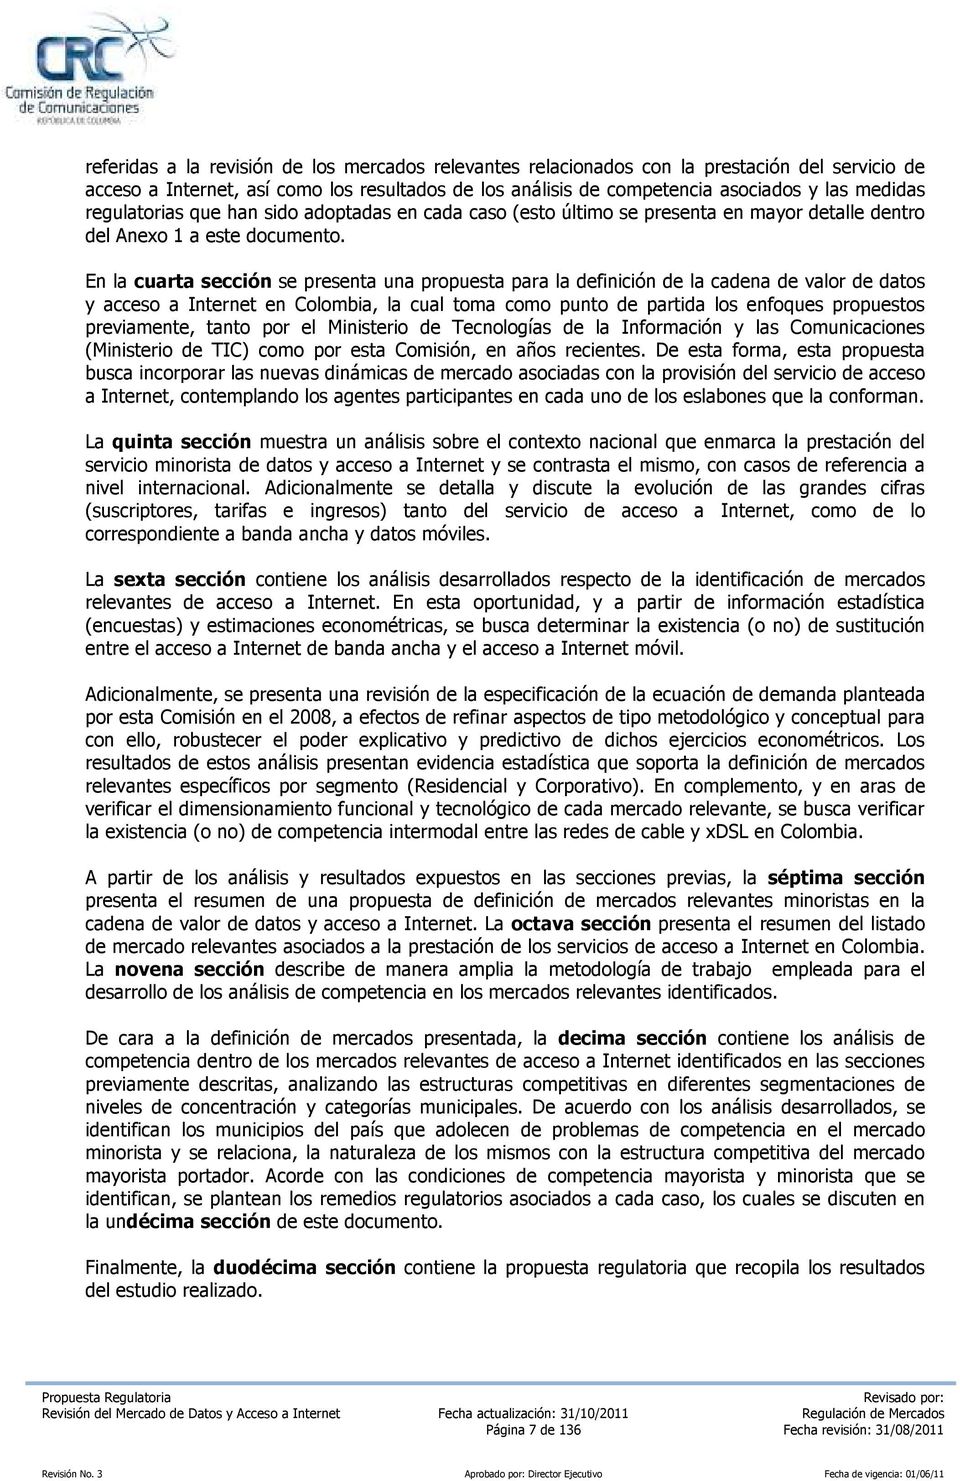 En la cuarta sección se presenta una propuesta para la definición de la cadena de valor de datos y acceso a Internet en Colombia, la cual toma como punto de partida los enfoques propuestos